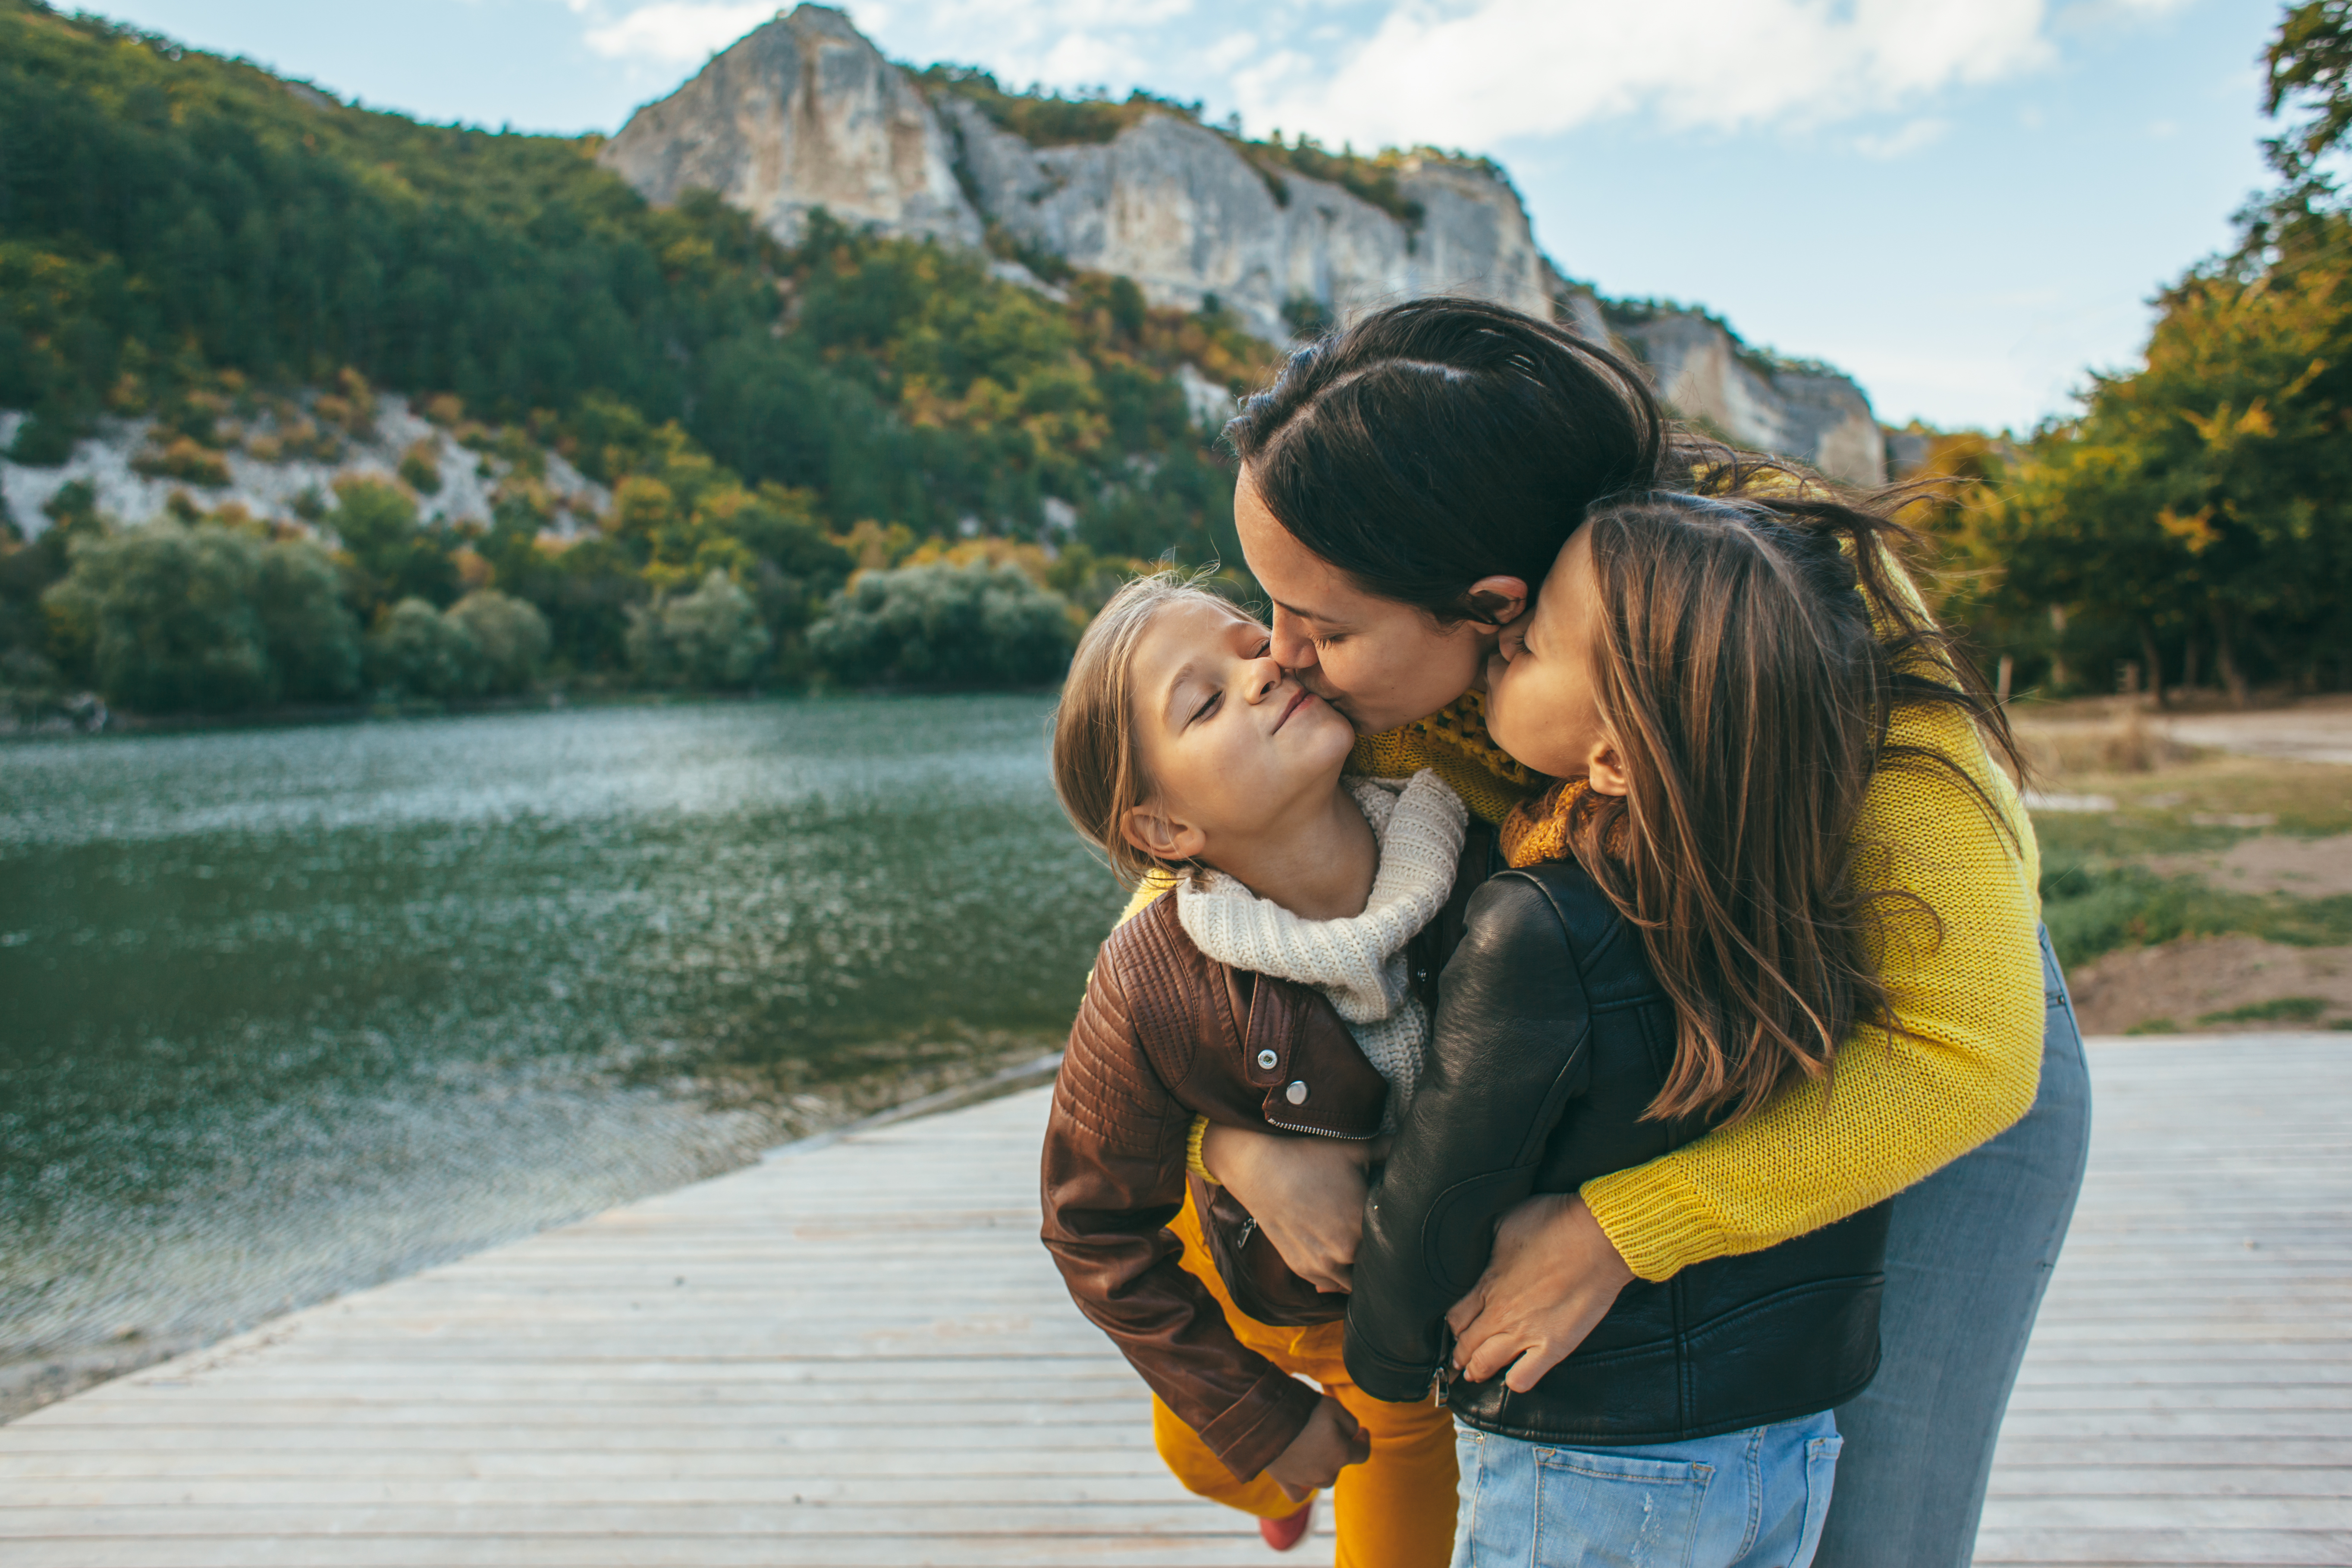 A woman kisses her little girls standing near a pond | Source: Shutterstock